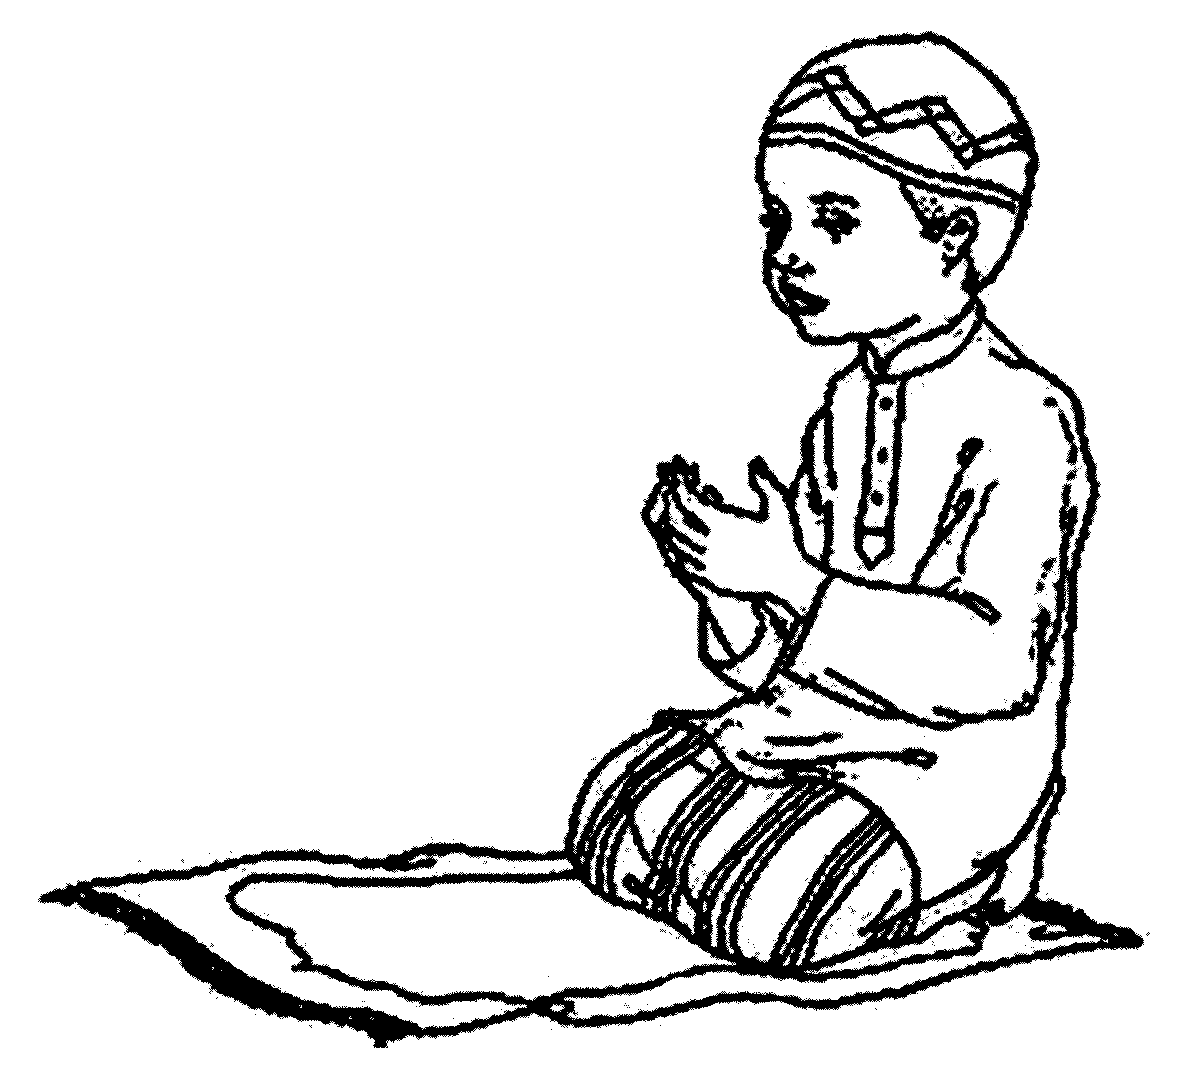  Gambar  Gambar  Kartun  Muslimah  Hitam Putih Muslim Sketch 